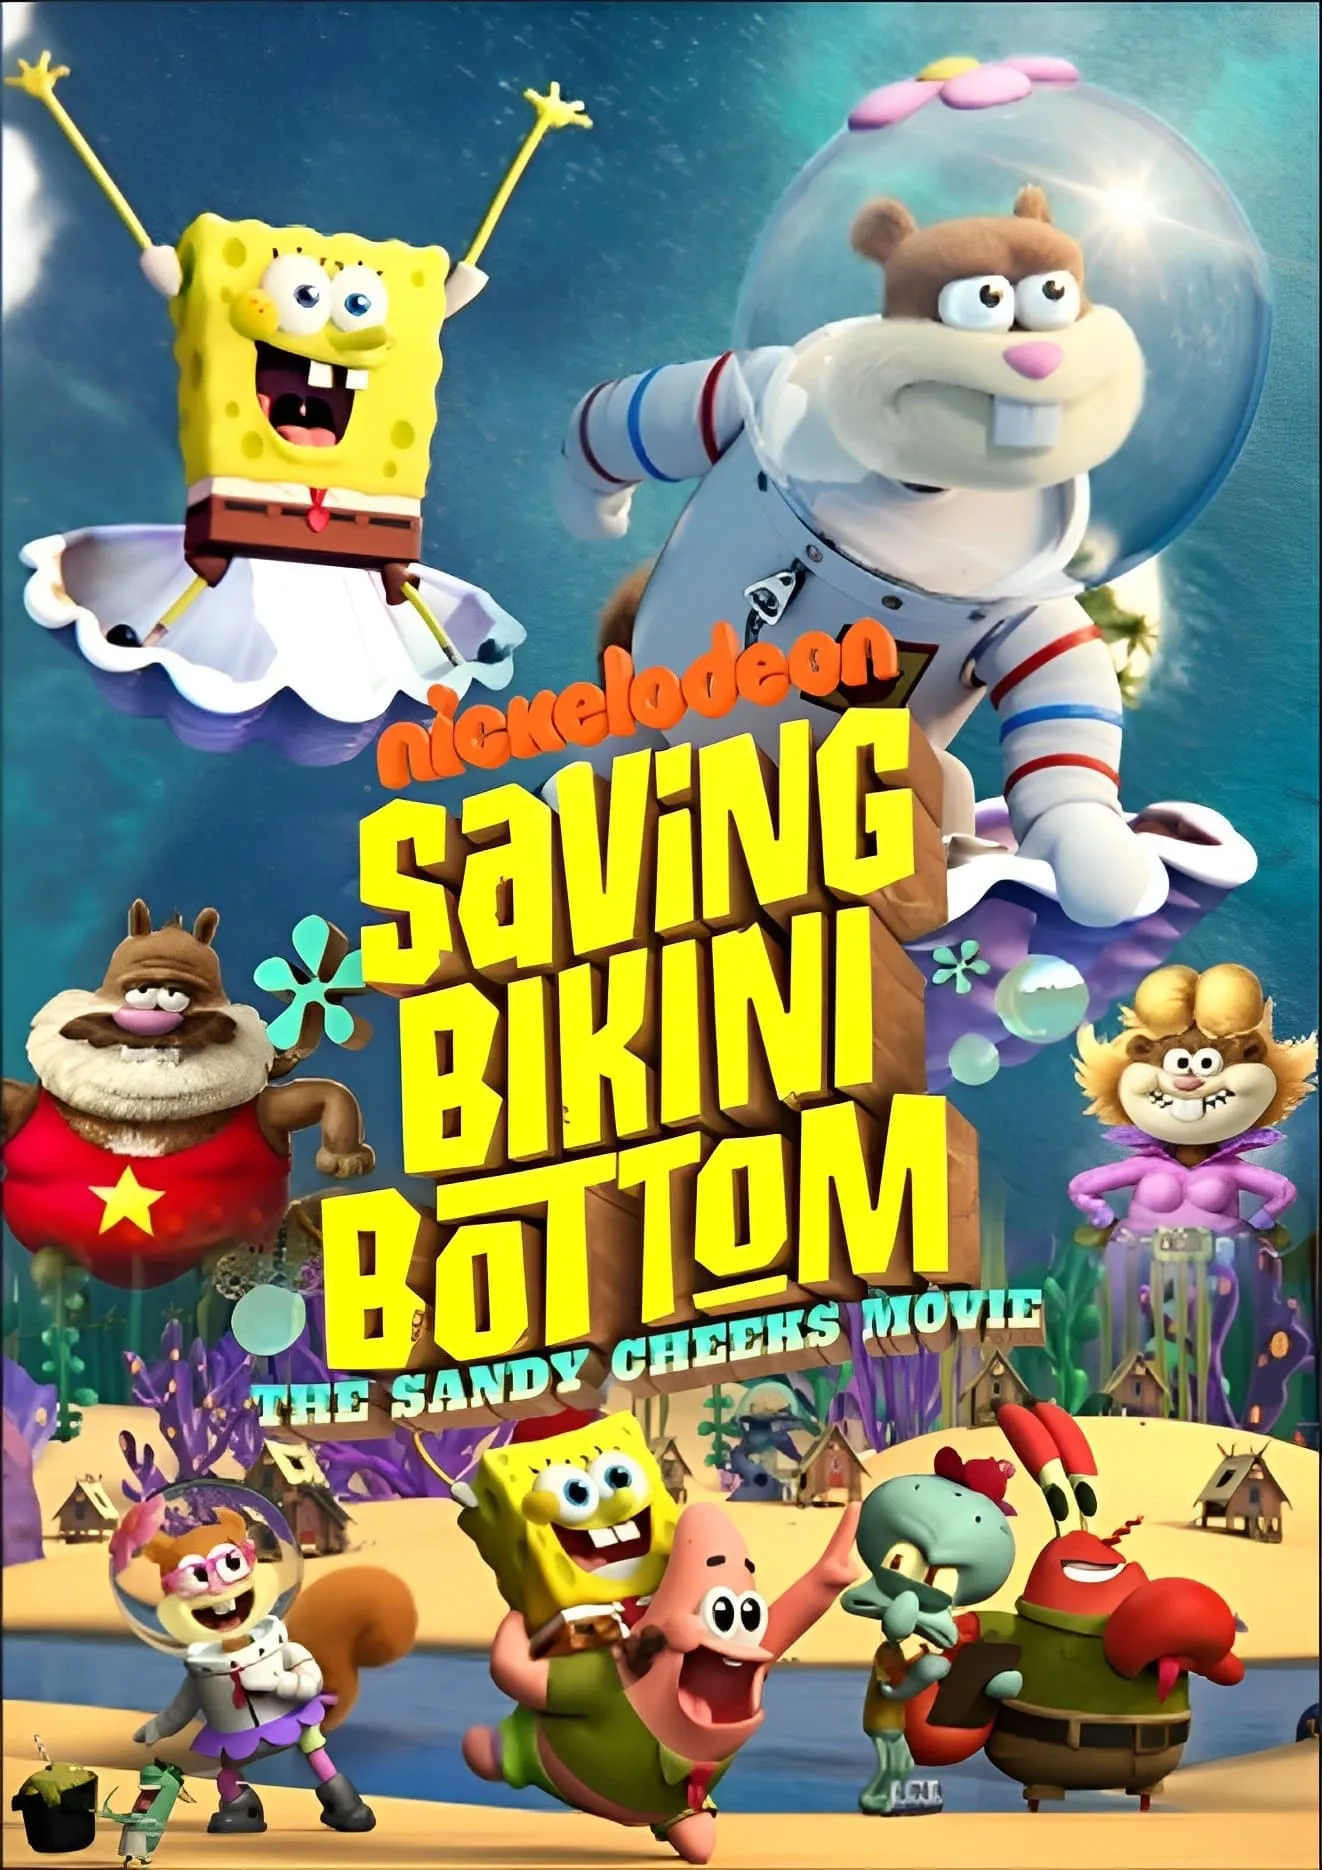 دانلود انیمیشن نجات بیکینی باتم: فیلم سندی چیکس Saving Bikini Bottom: The Sandy Cheeks Movie 2024 دوبله فارسی